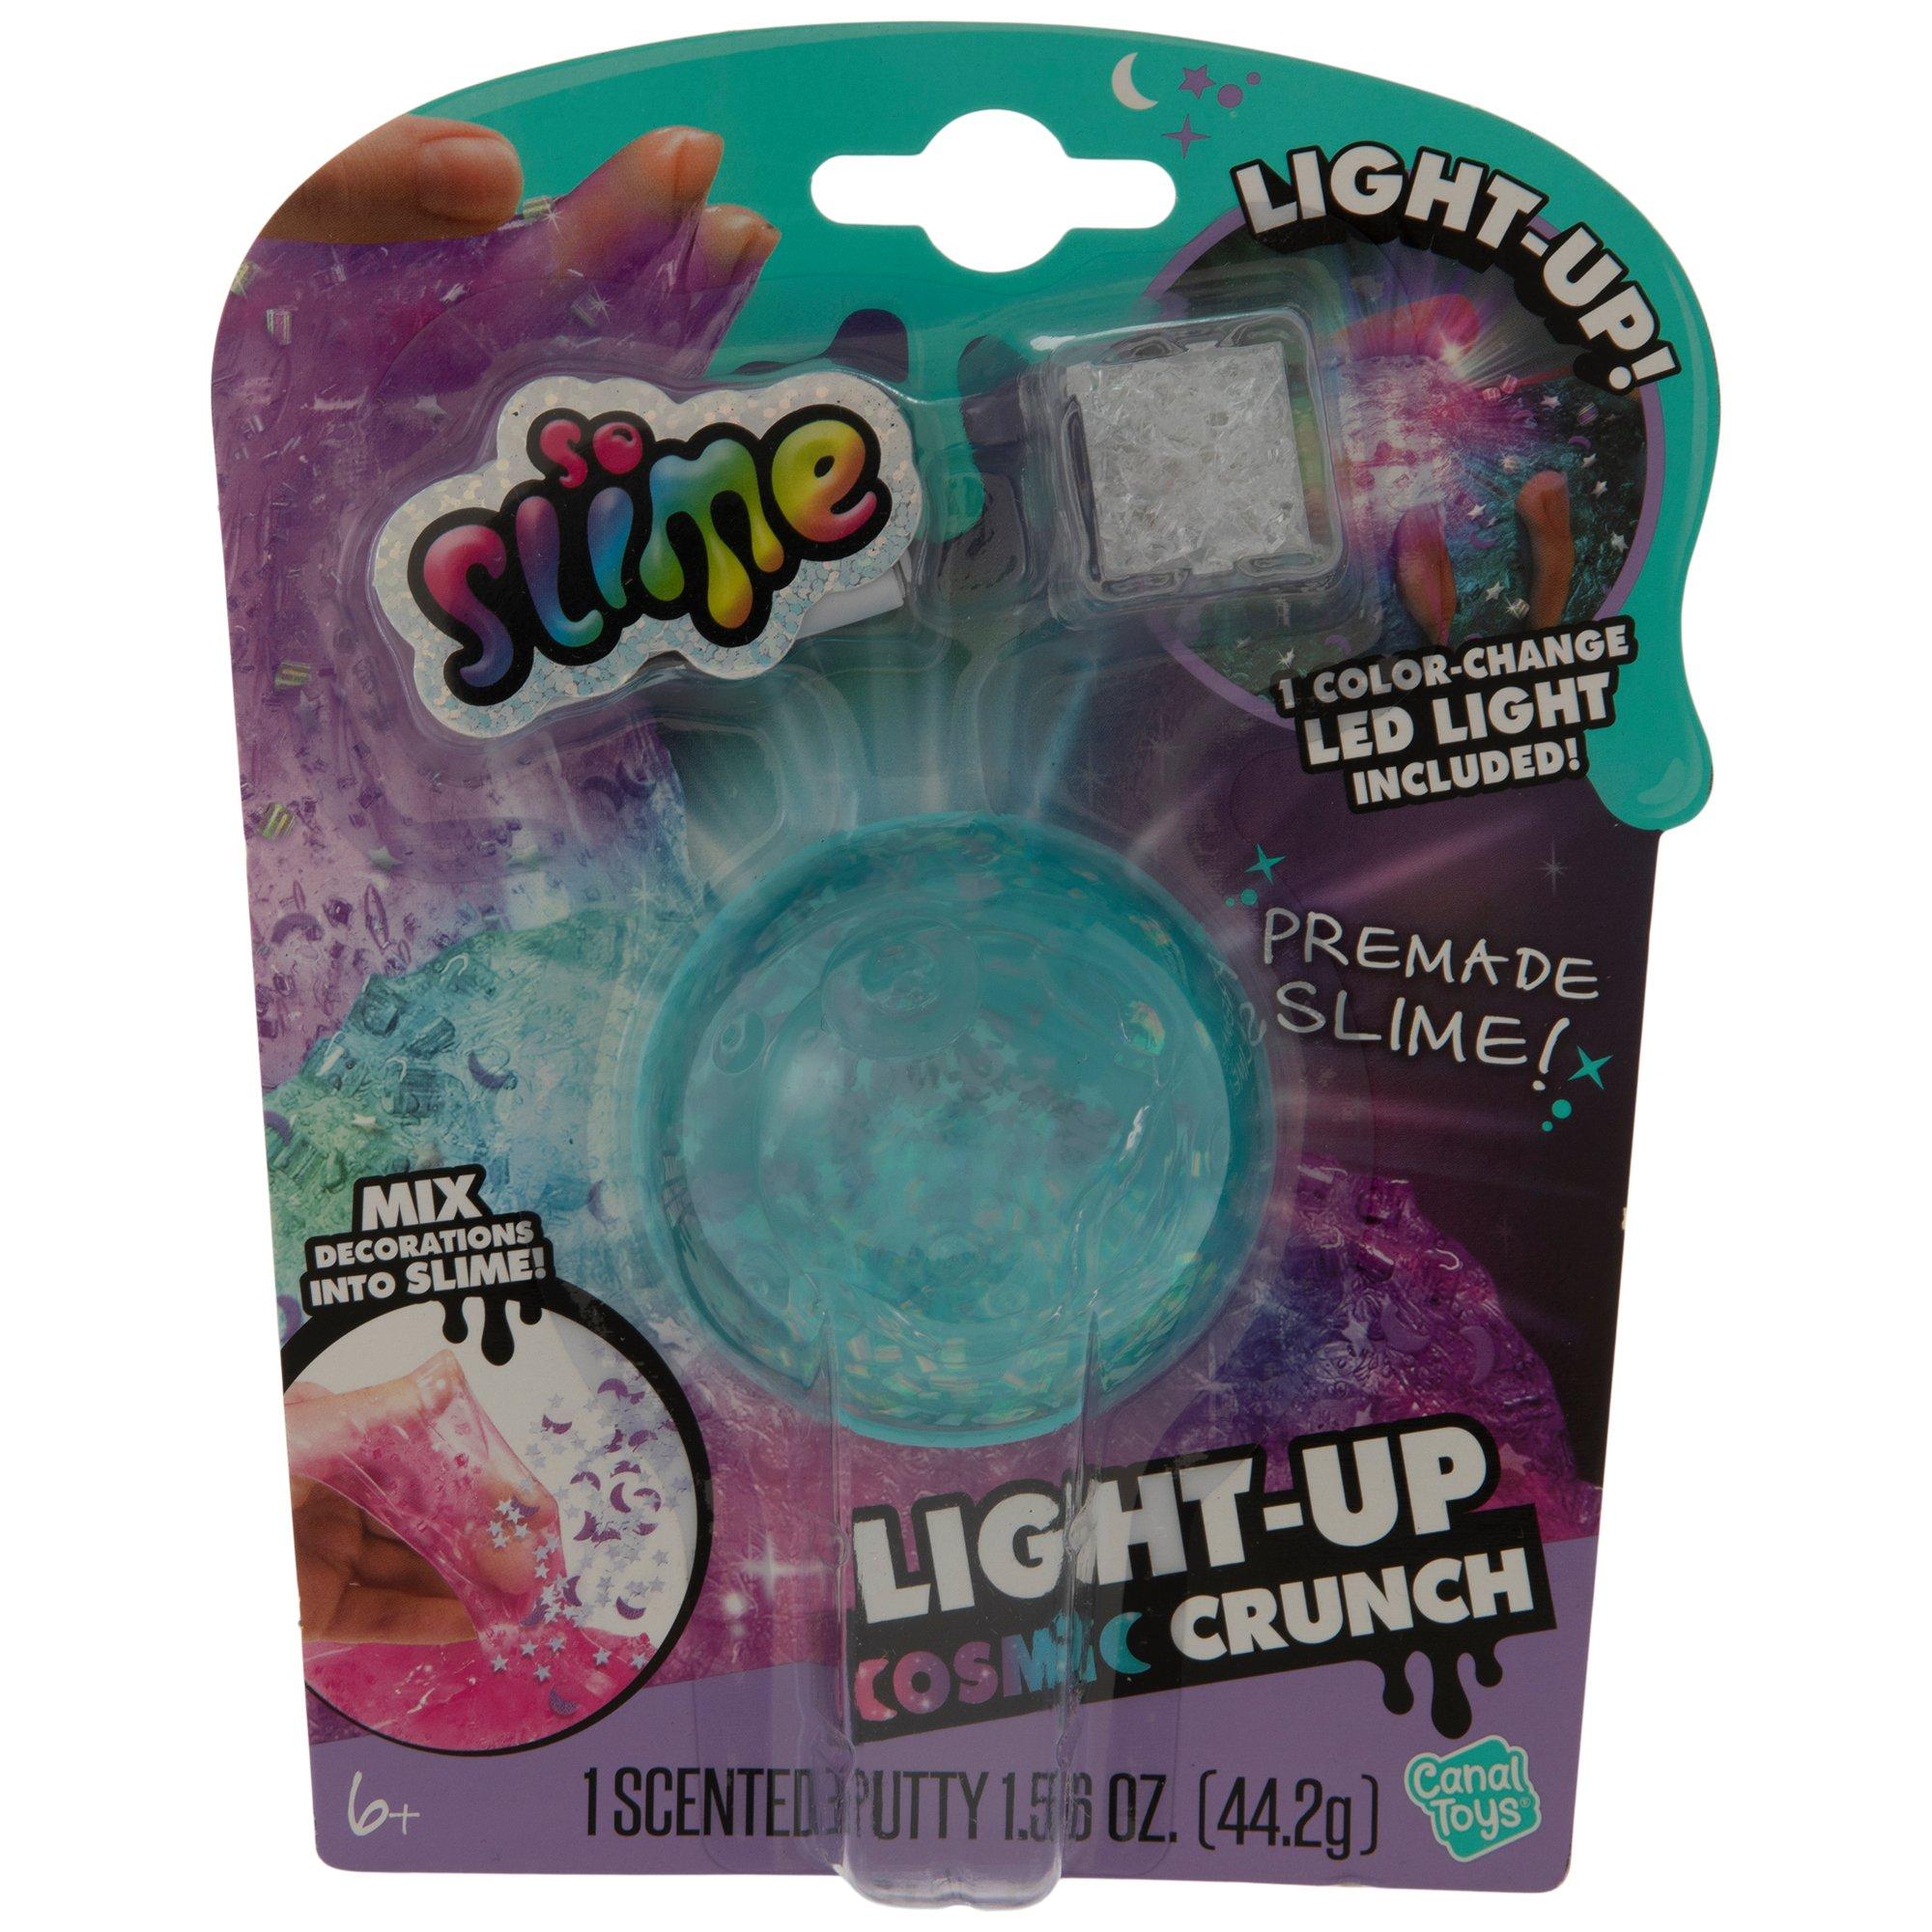 So Slime Light Up Cosmic Crunch Slime Kit